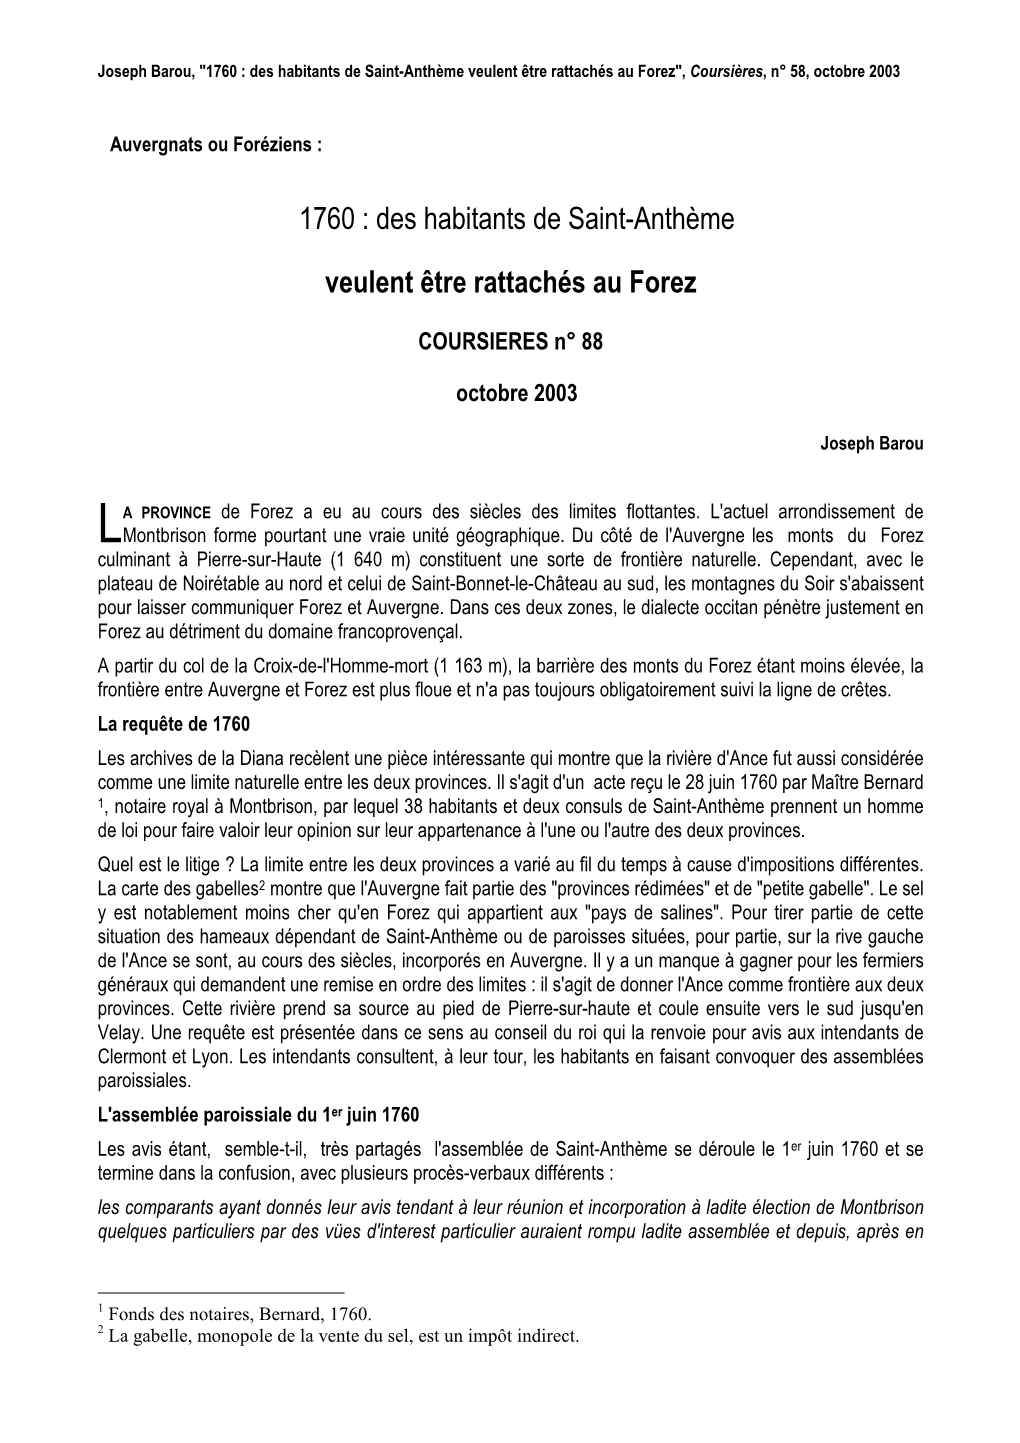 Des Habitants De Saint-Anthème Veulent Être Rattachés Au Forez", Coursières , N° 58, Octobre 2003